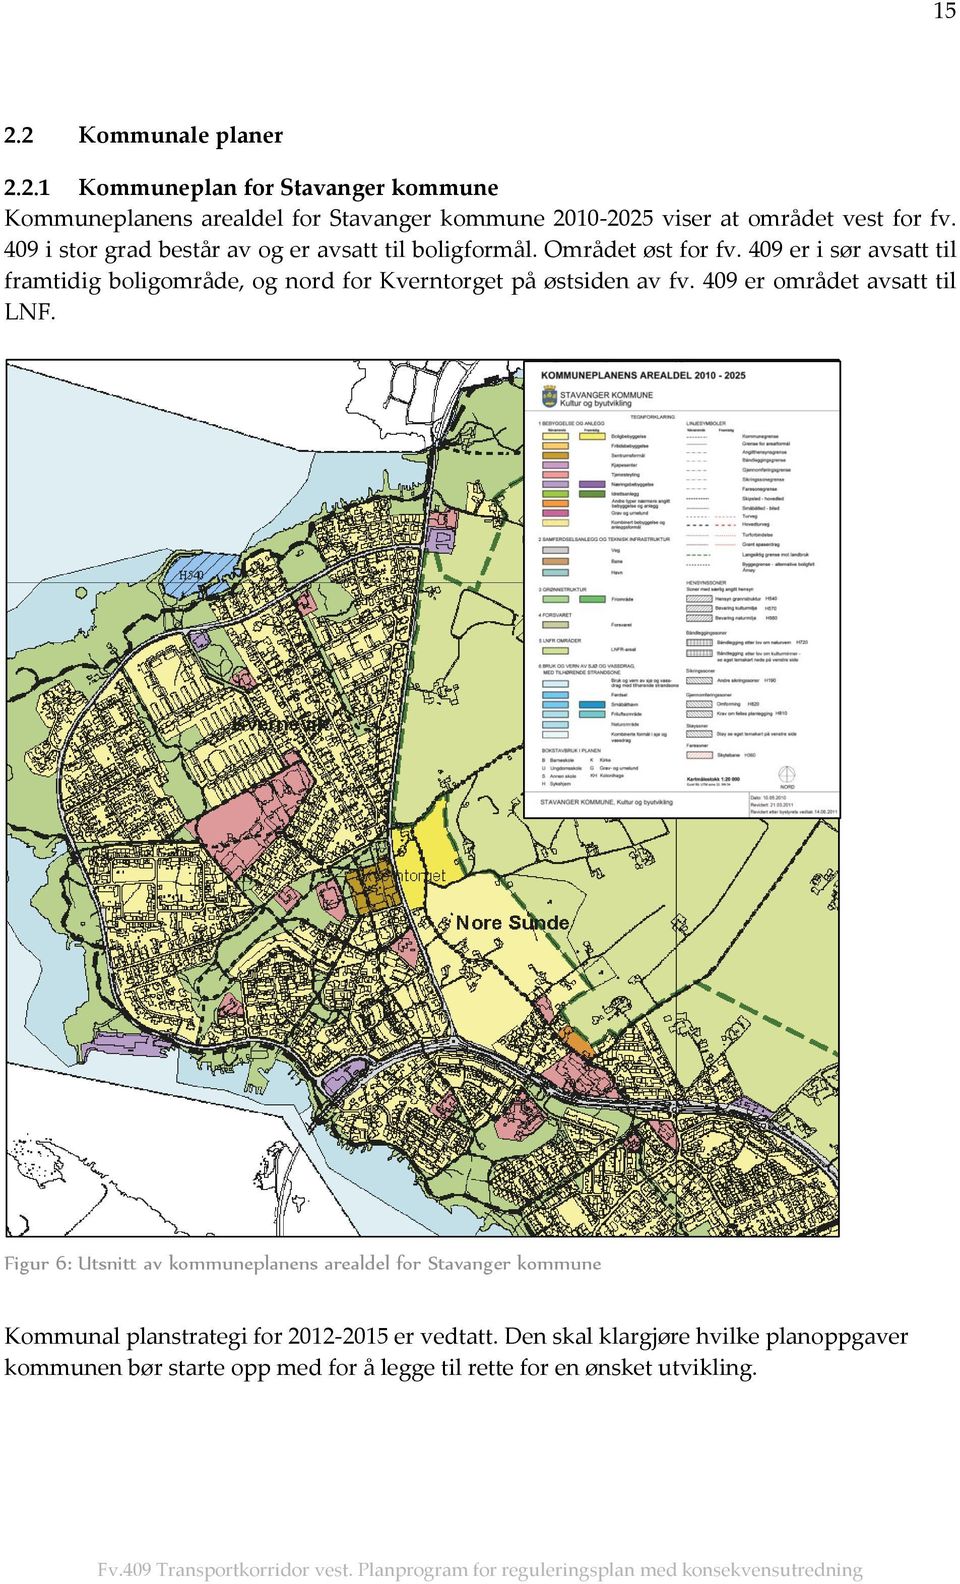 409 er i sør avsatt til framtidig boligområde, og nord for Kverntorget på østsiden av fv. 409 er området avsatt til LNF.